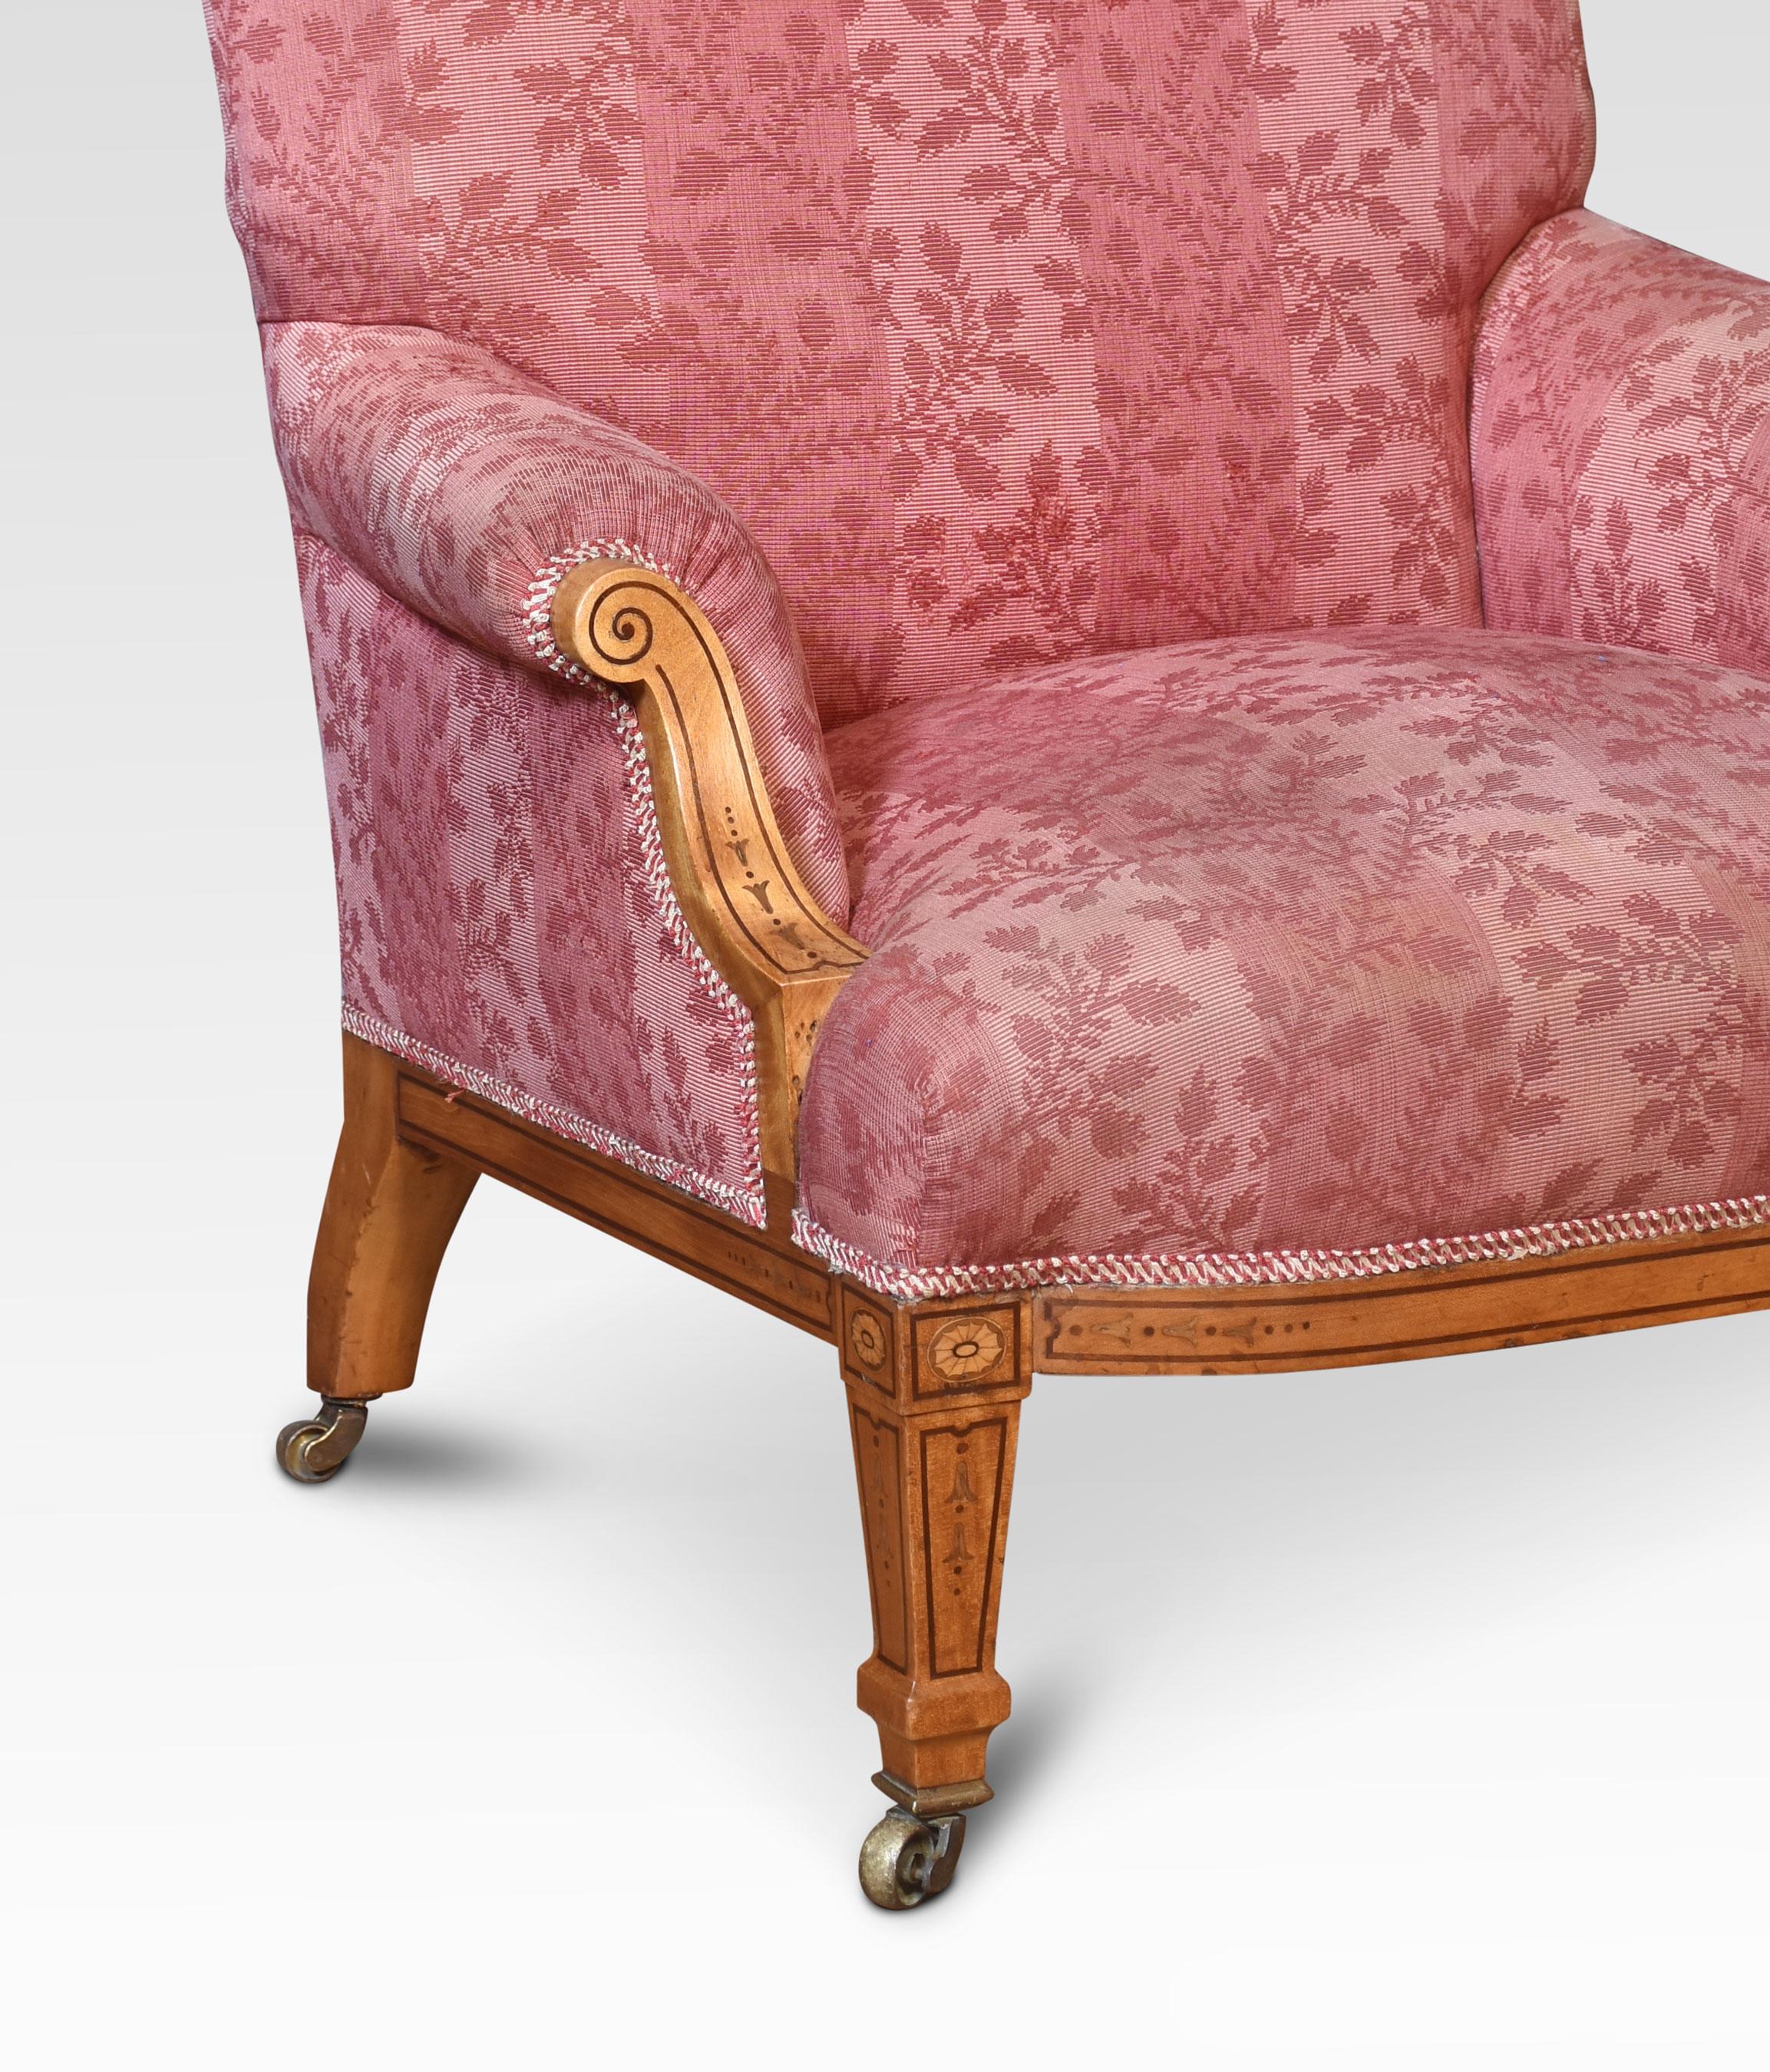 Paar der 19. Jahrhundert abgestuften Satinholz Lounge Stühle, die geformten Rücken und gepolsterten Scrolling Arme und Sitz mit Damast gepolstert, die Polsterung ist mit einigen Spuren getragen. Erhöht auf einem Rahmen aus satiniertem Holz mit